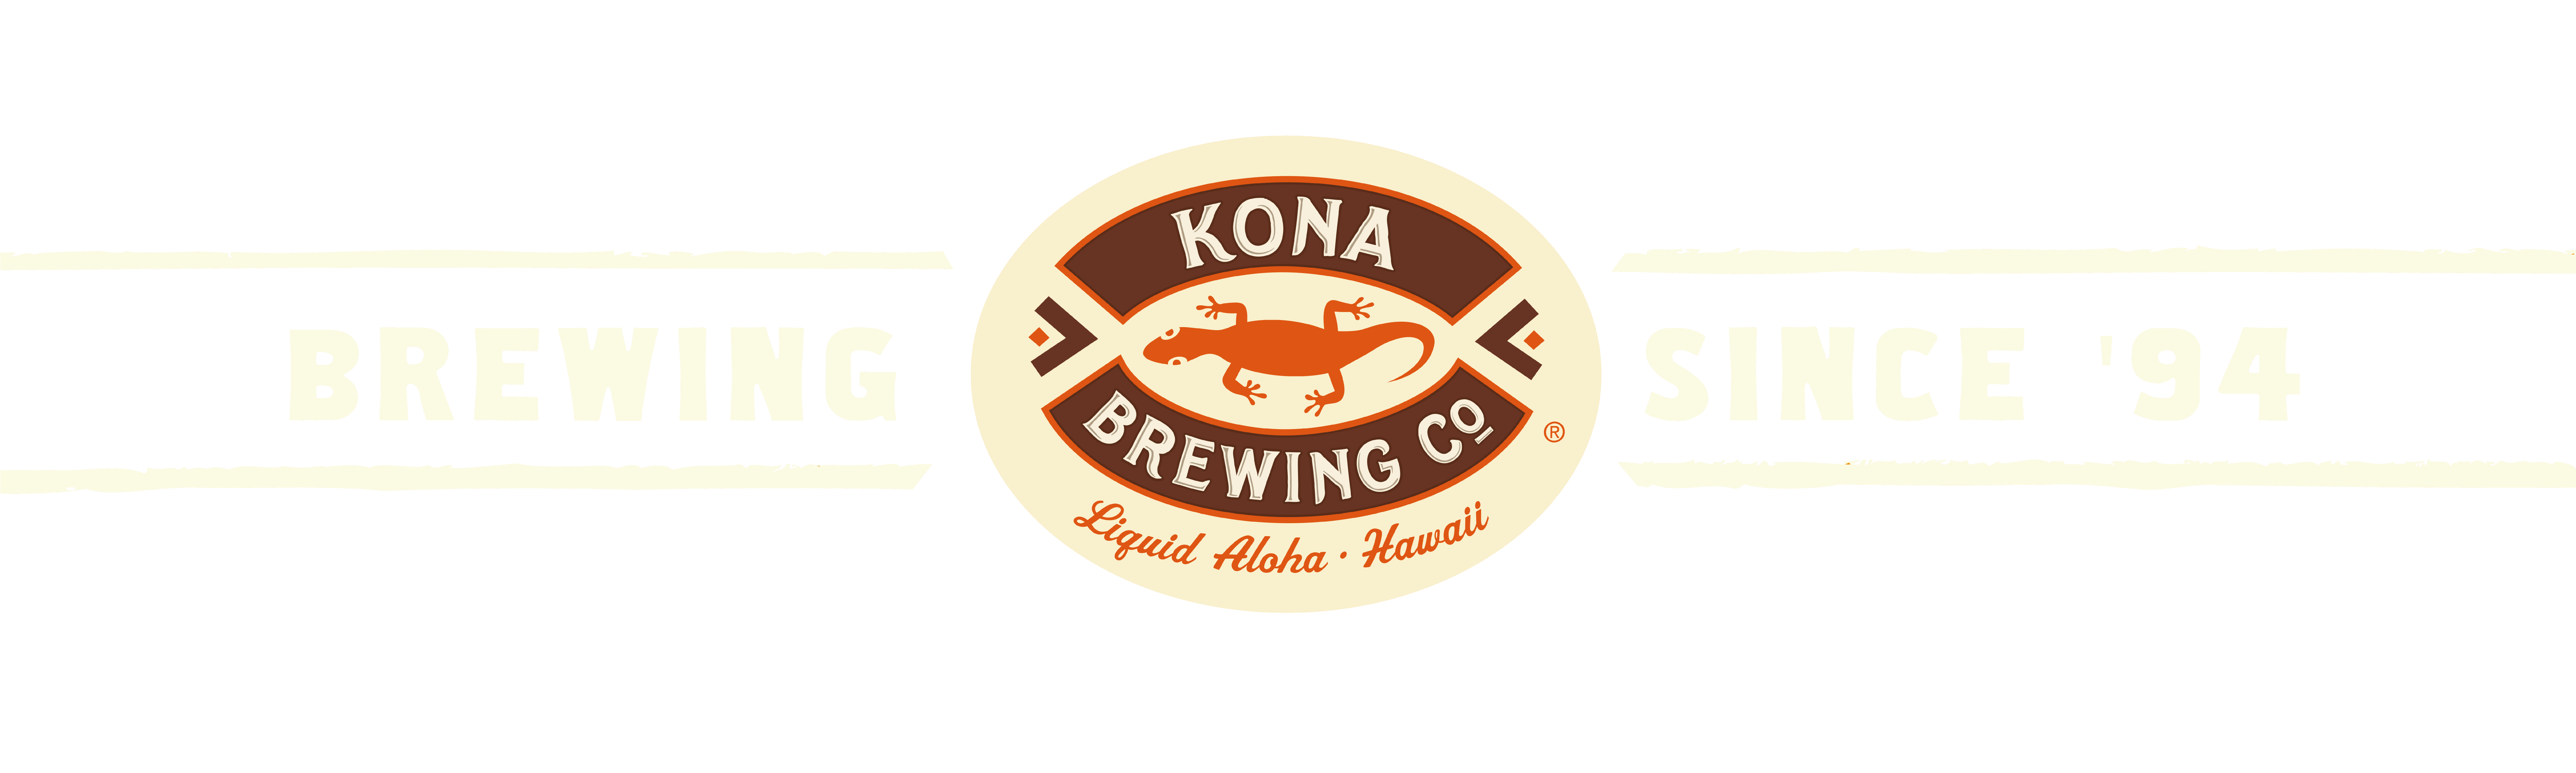 公式 コナビール ハワイno 1クラフトビール ハワイno 1クラフトビール Konaビールの公式サイトです 1994 年にハワイ島カイルア コナの町で誕生したkonaビールは高品質で美味しいビールを造ることで人々を幸せにし 全世界でファンを増やし続けています One Life